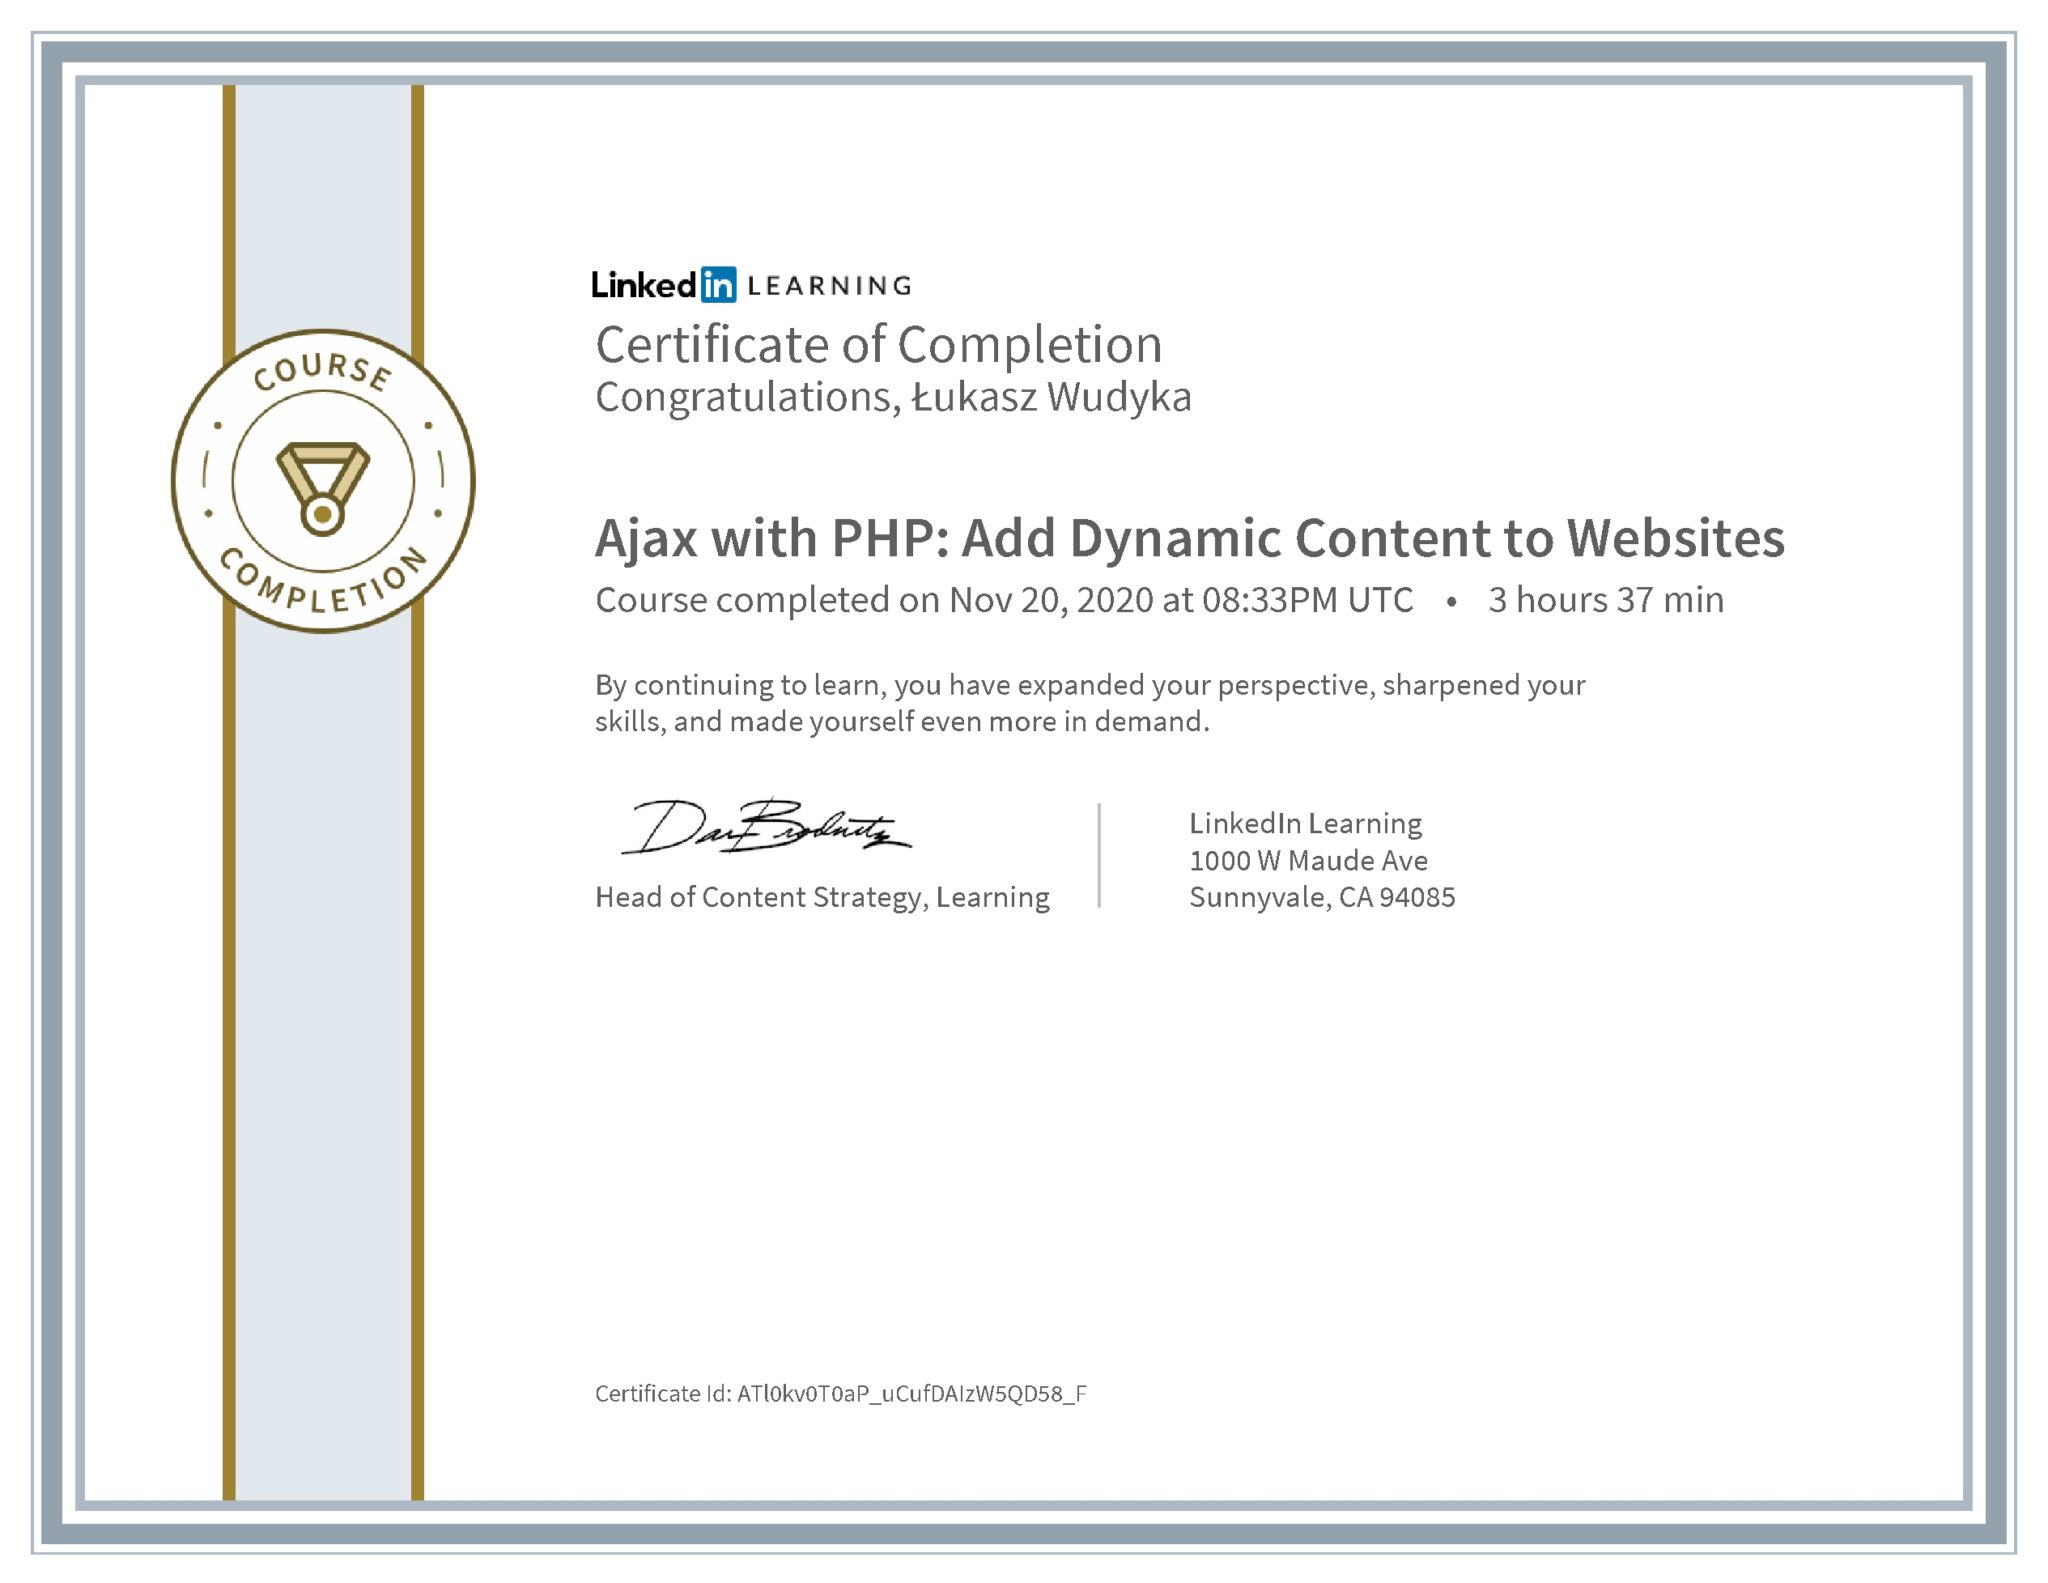 Łukasz Wudyka certyfikat LinkedIn Ajax with PHP: Add Dynamic Content to Websites